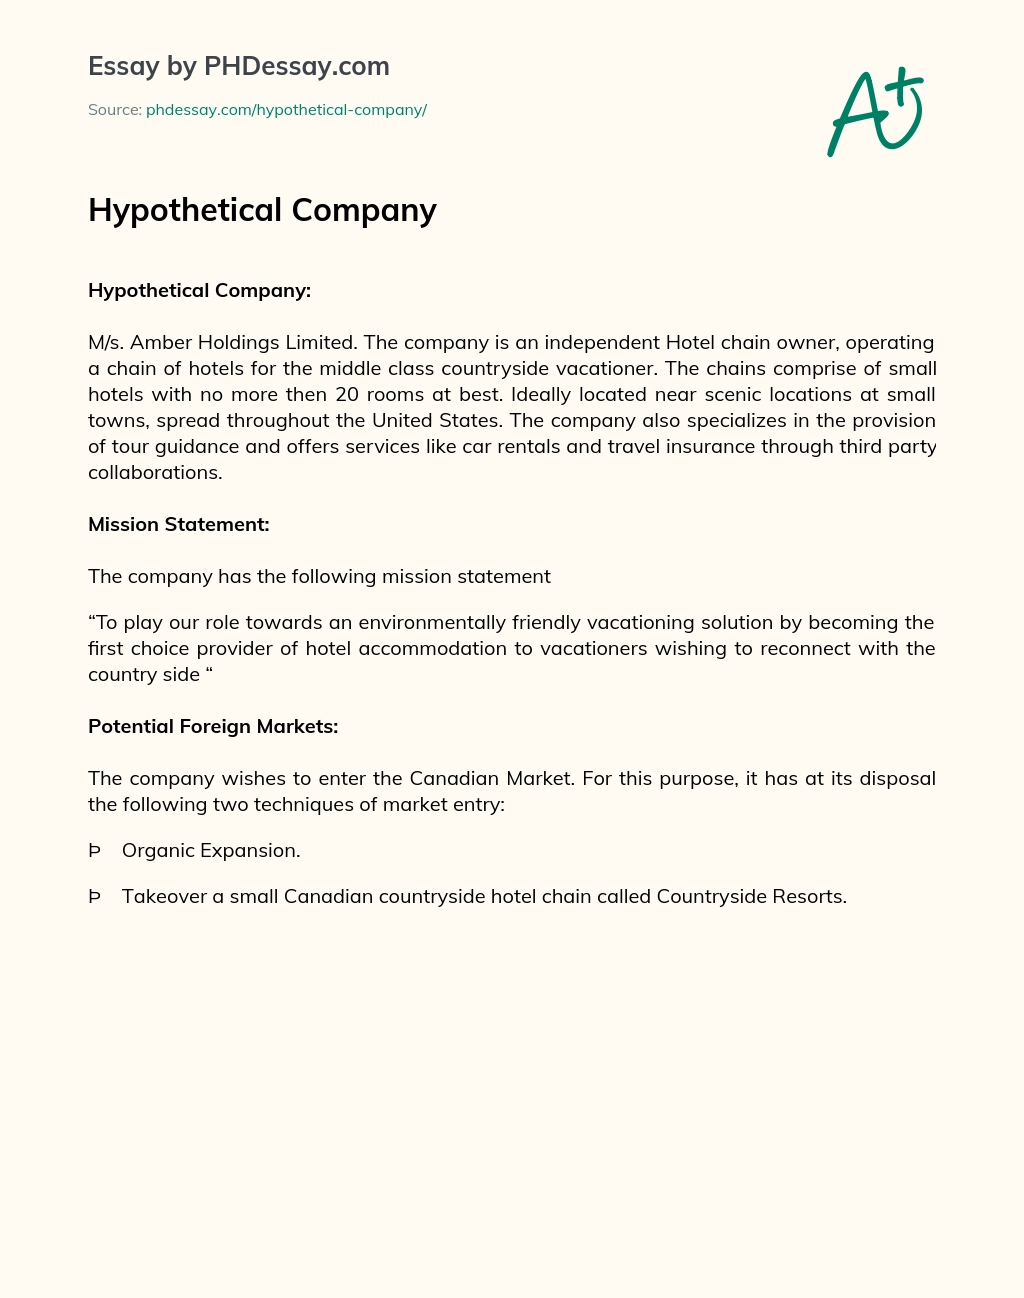 Hypothetical Company essay